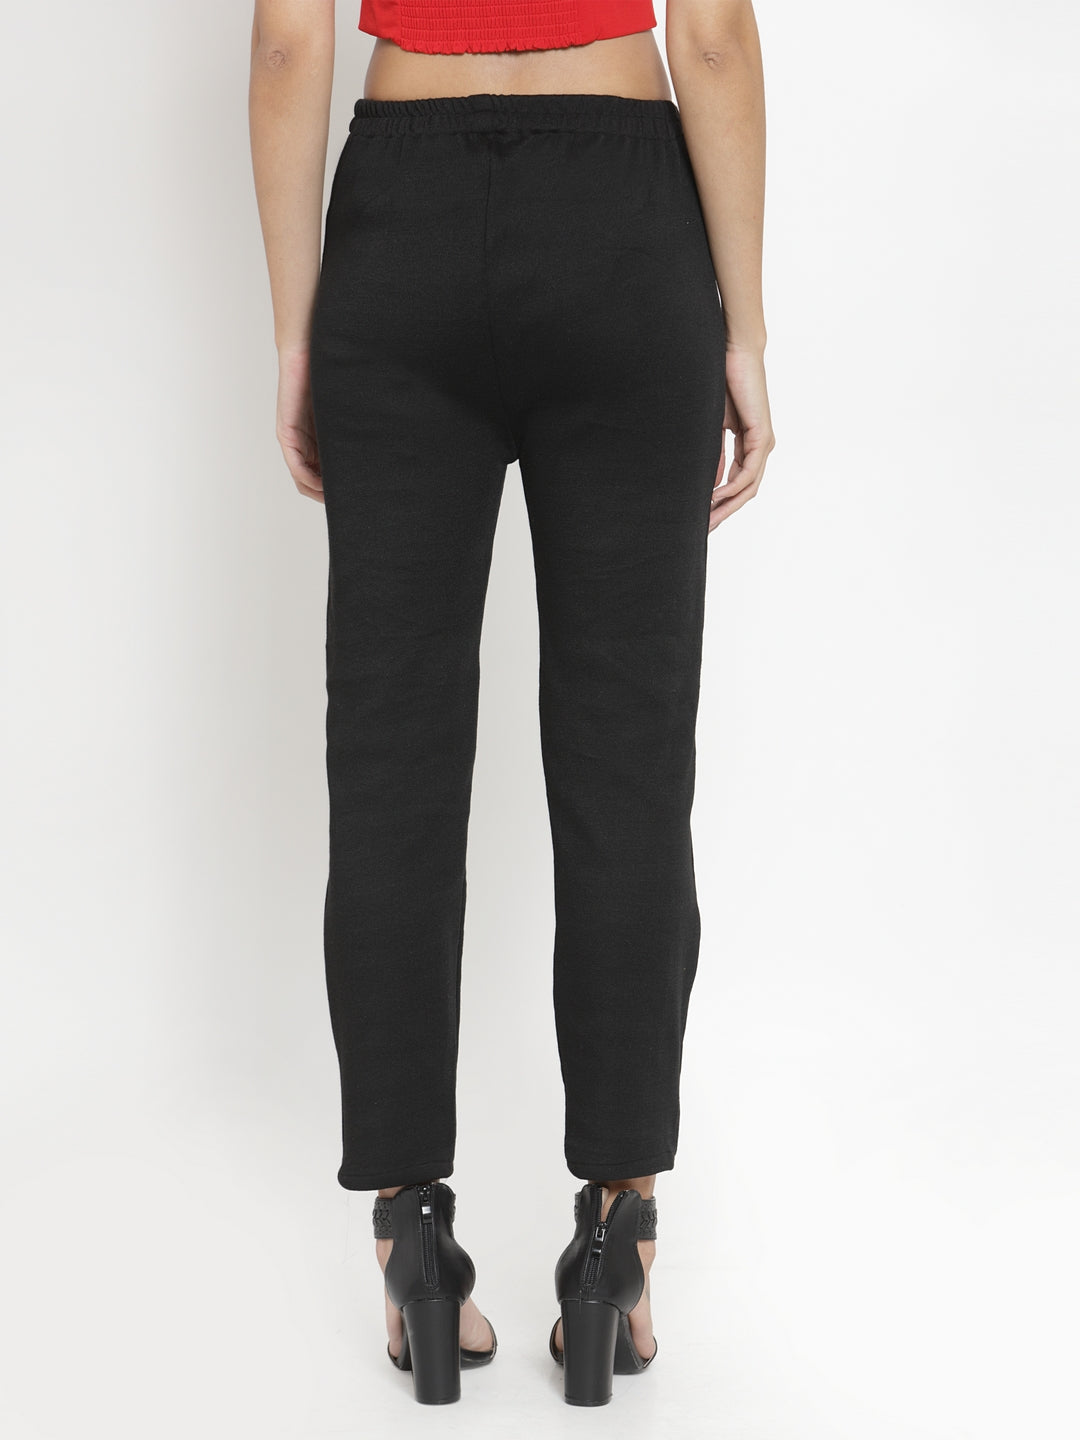 Women's Black Woolen Solid Pant - Wahe-NOOR